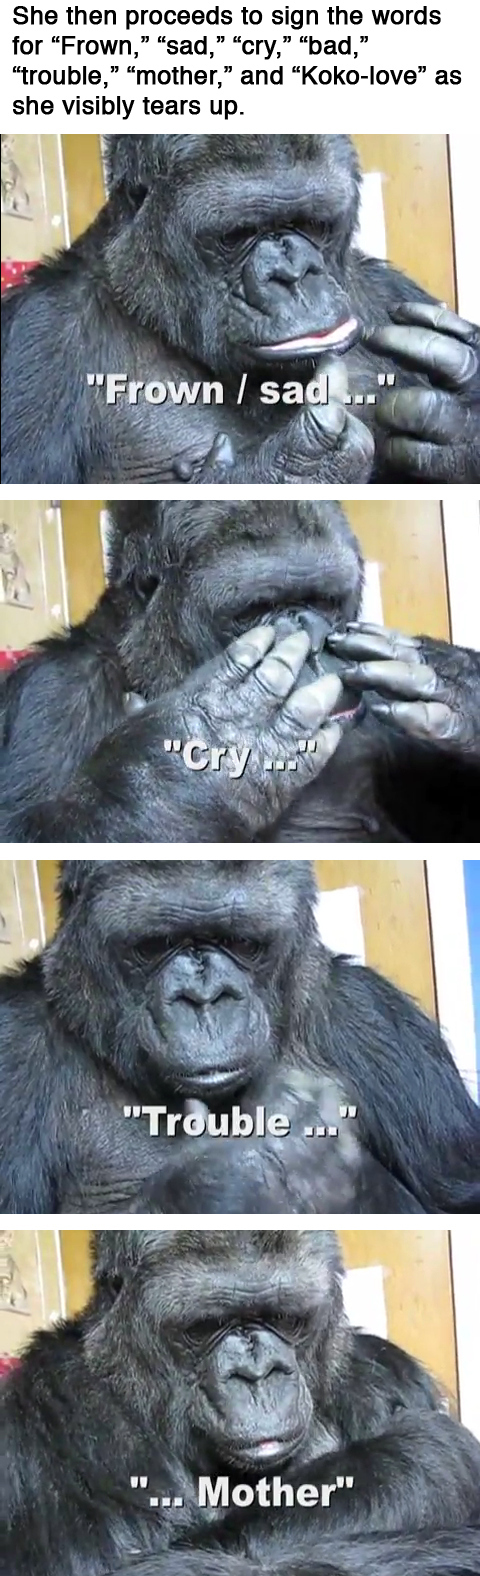 Koko the Gorilla 2